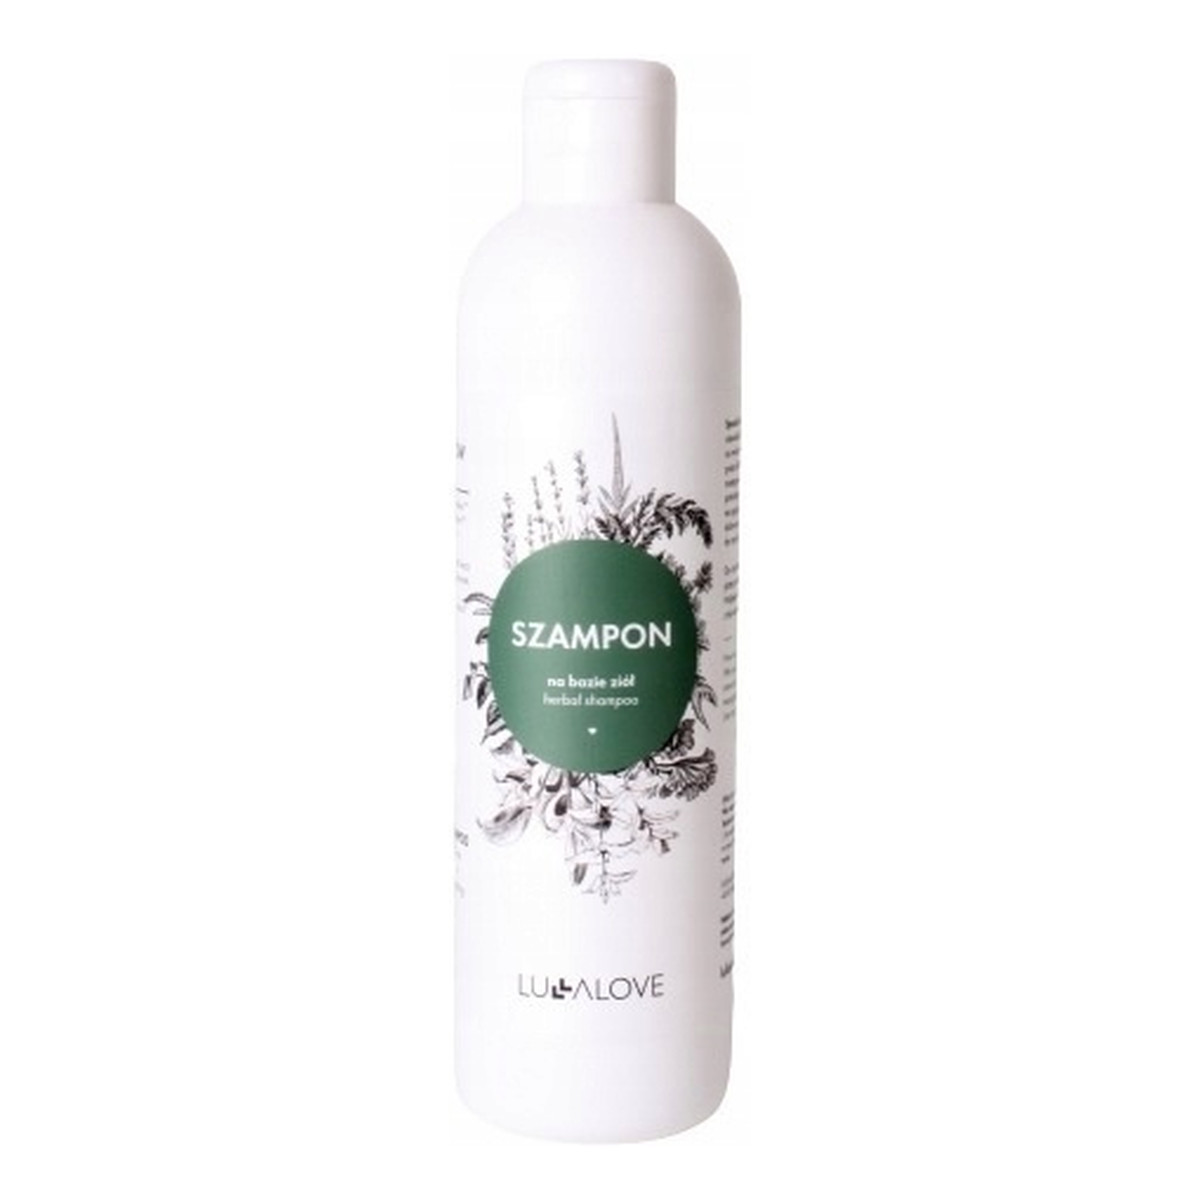 Lullalove Oczyszczający szampon do włosów na bazie ziół 250ml